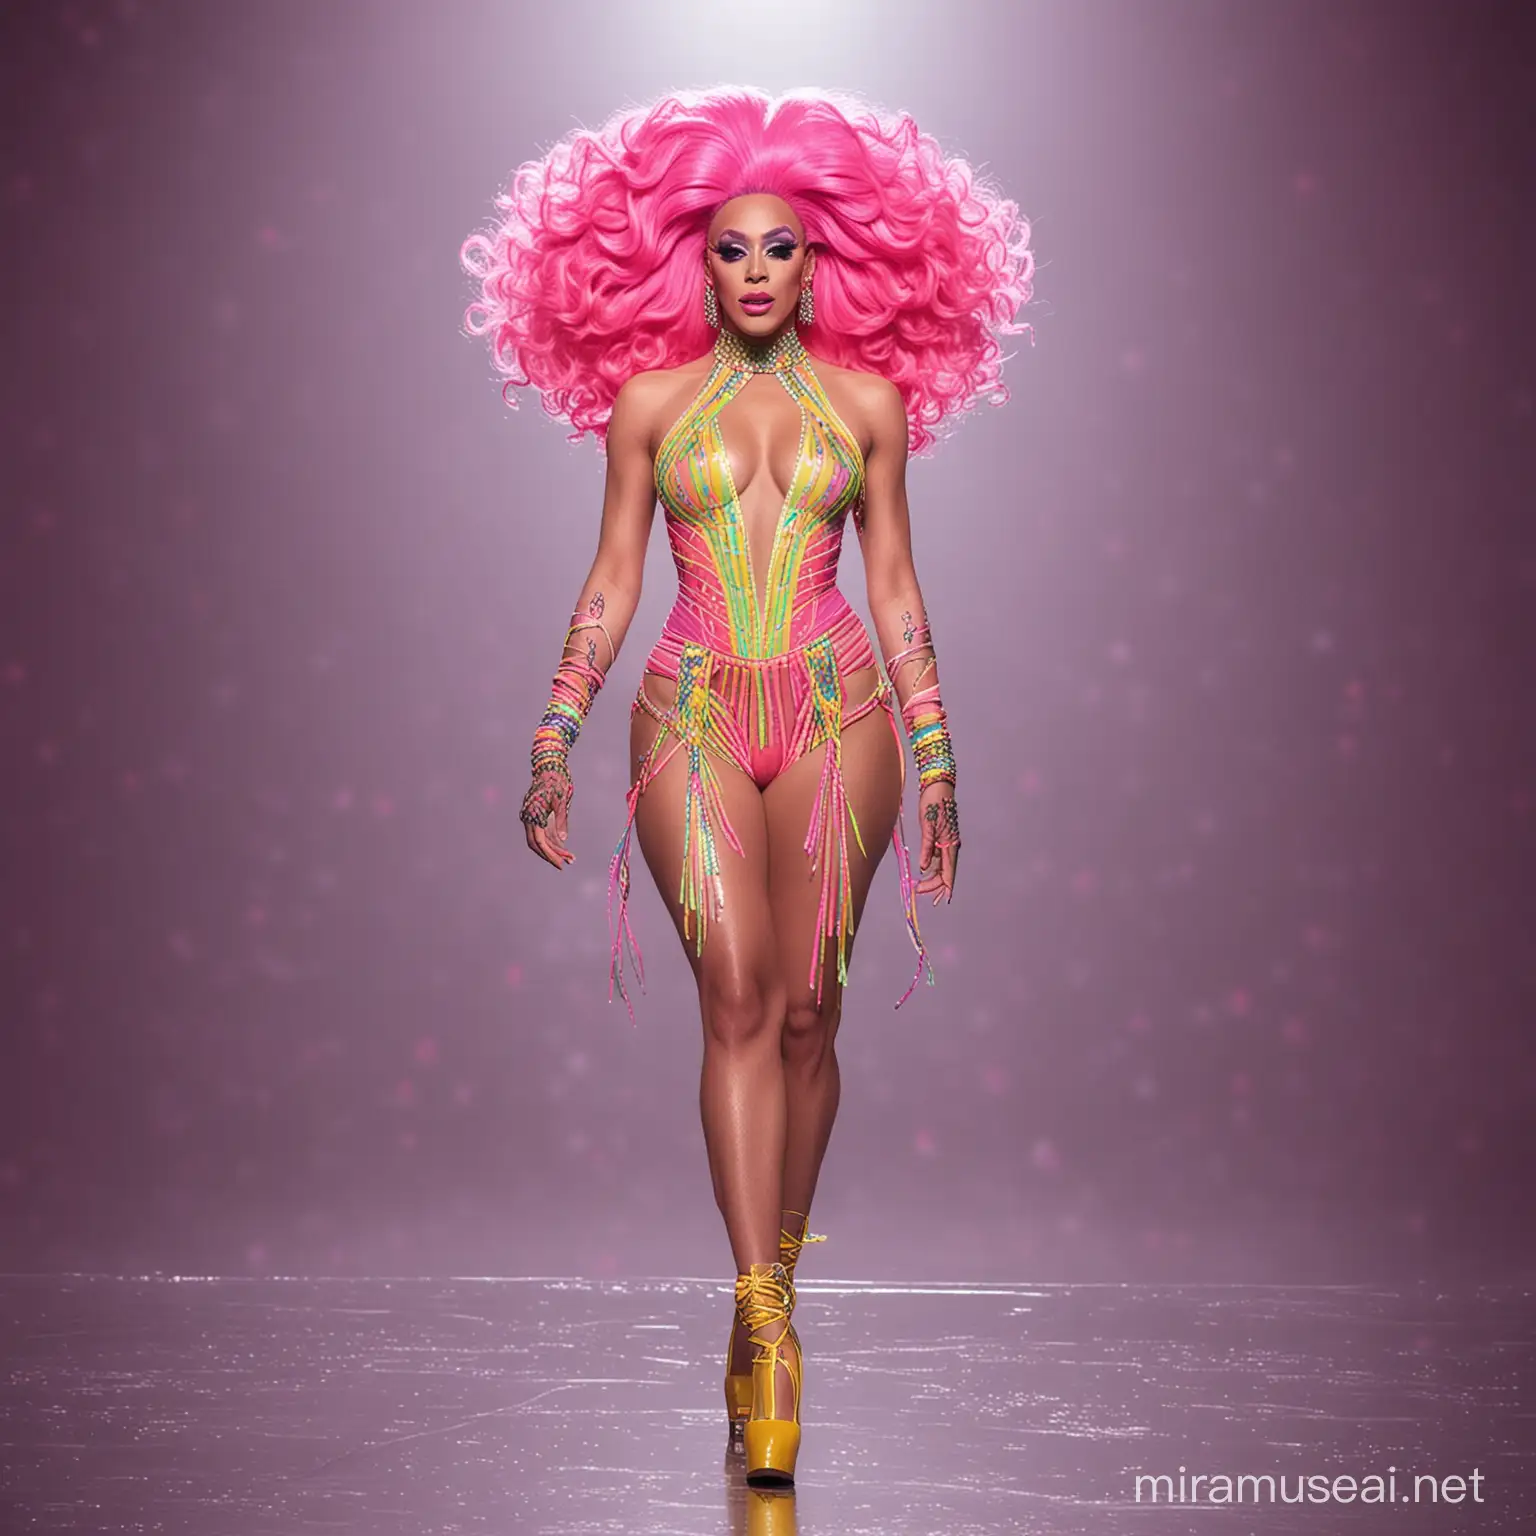 Brazilian Neon Drag Queen Struts Runway in Hidden Identity Outfit